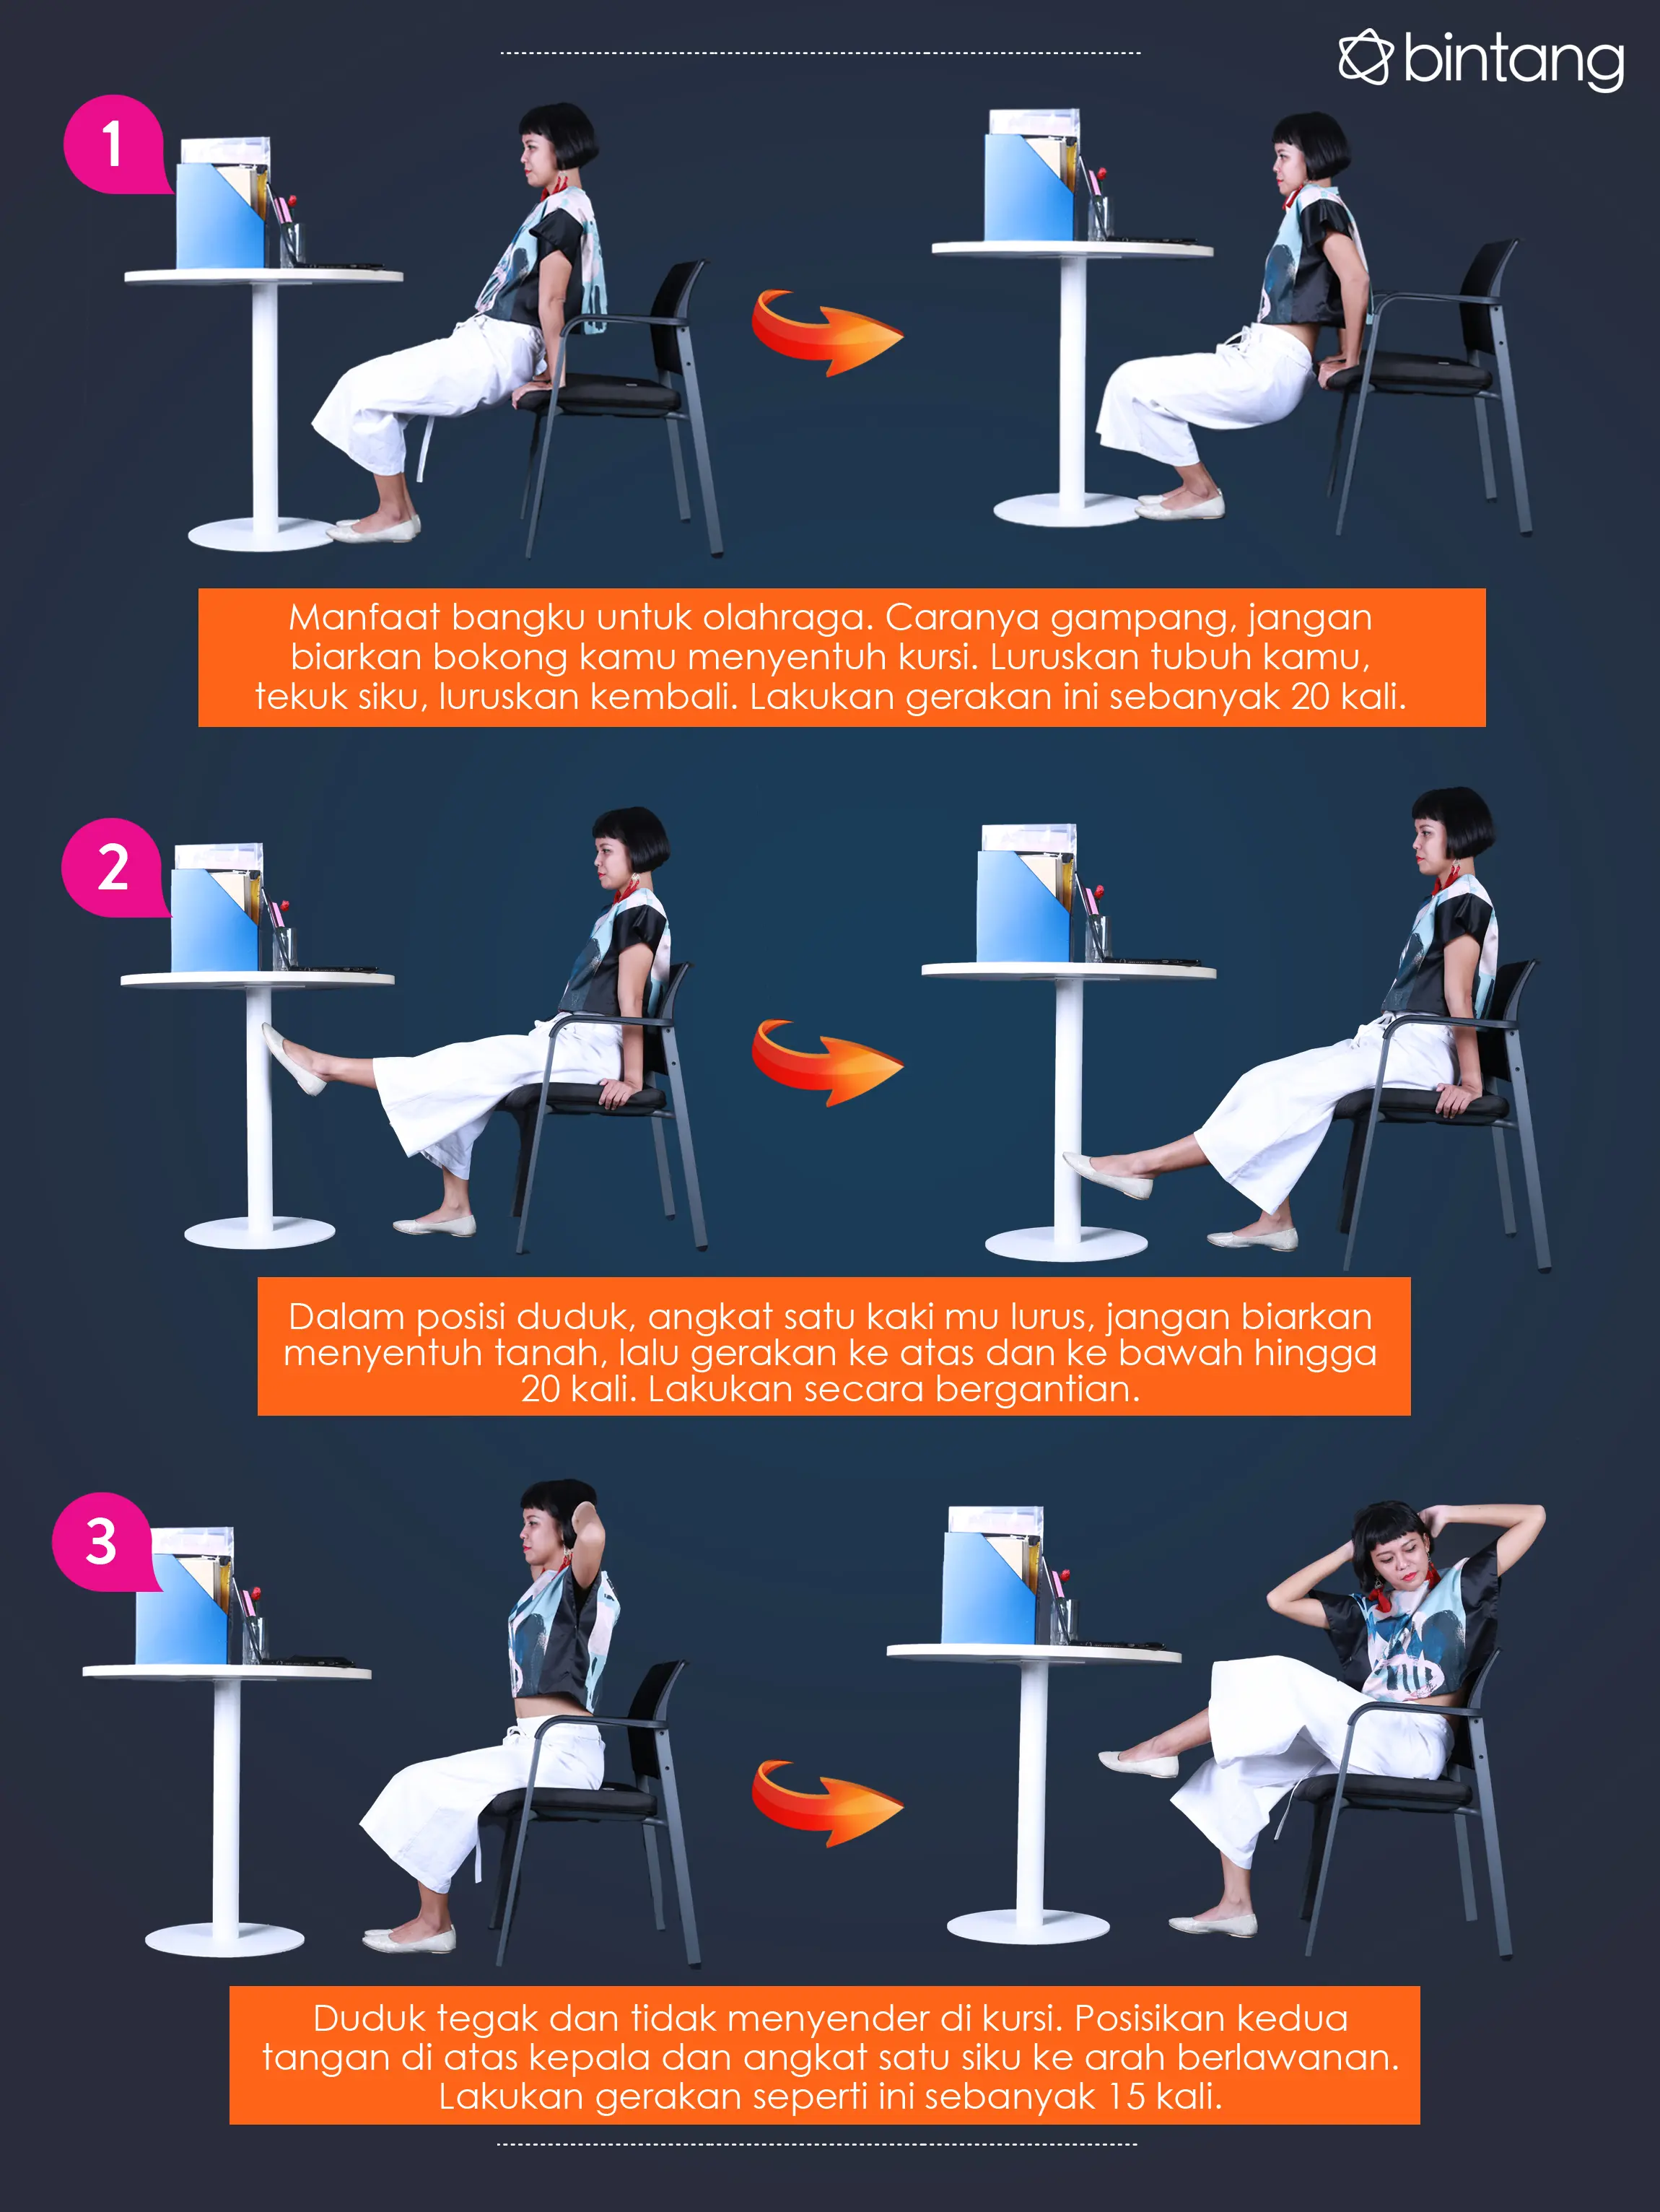 Begini cara agar tubuhmu tetap aktif dan sehat meski kerja di belakang laptop. (Foto by Andy Masela/Bintang.com, Digital Imaging by Muhammad Iqbal Nurfajri/Bintang.com)